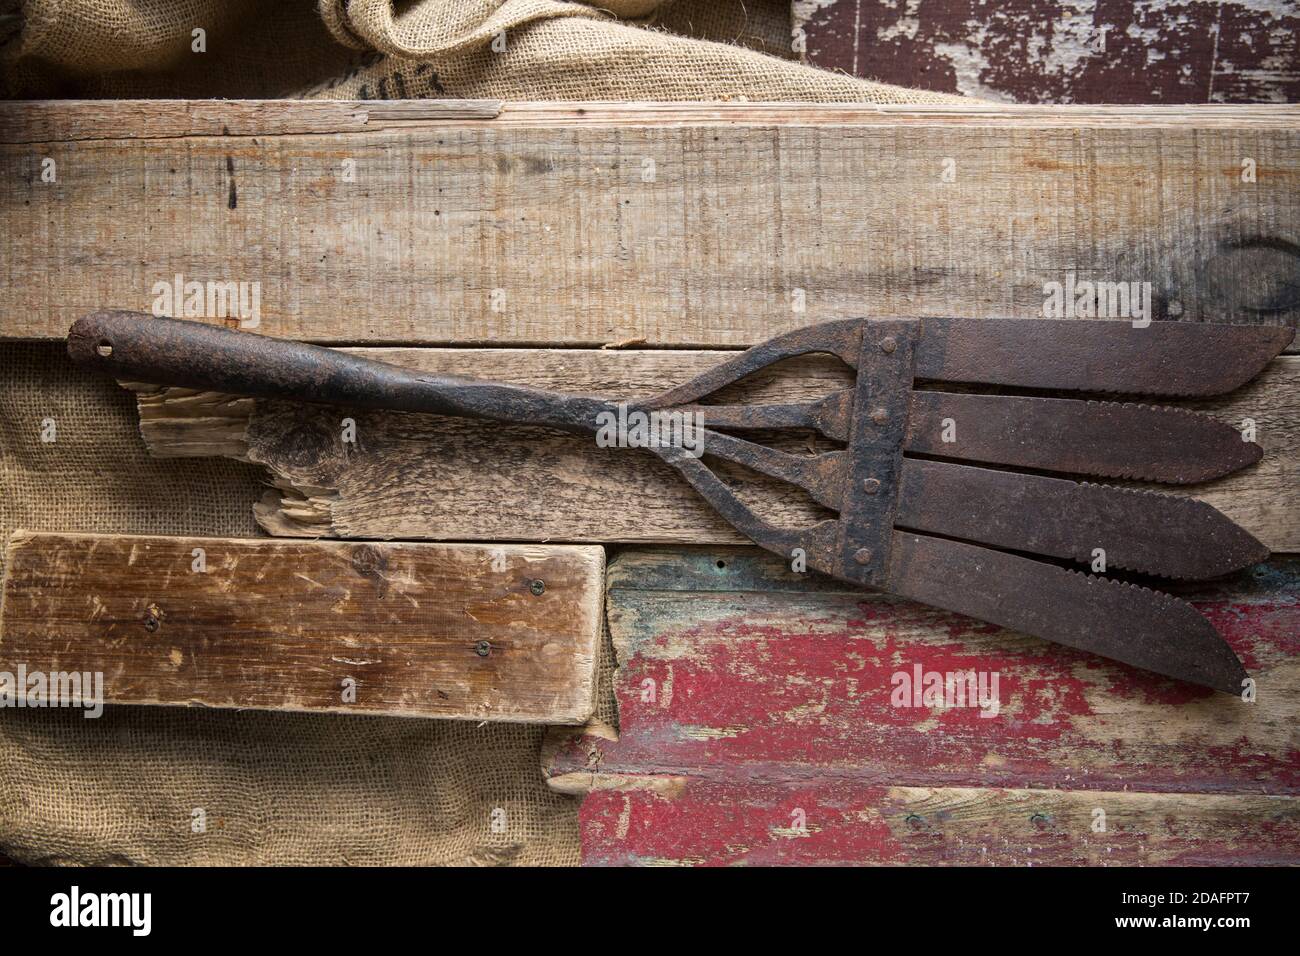 Une vieille lance d'anguilles en métal conçue pour capturer des anguilles européennes, Anguilla anguilla, photographiée sur fond de bois. Les lances à anguilles étaient connues par plusieurs n Banque D'Images